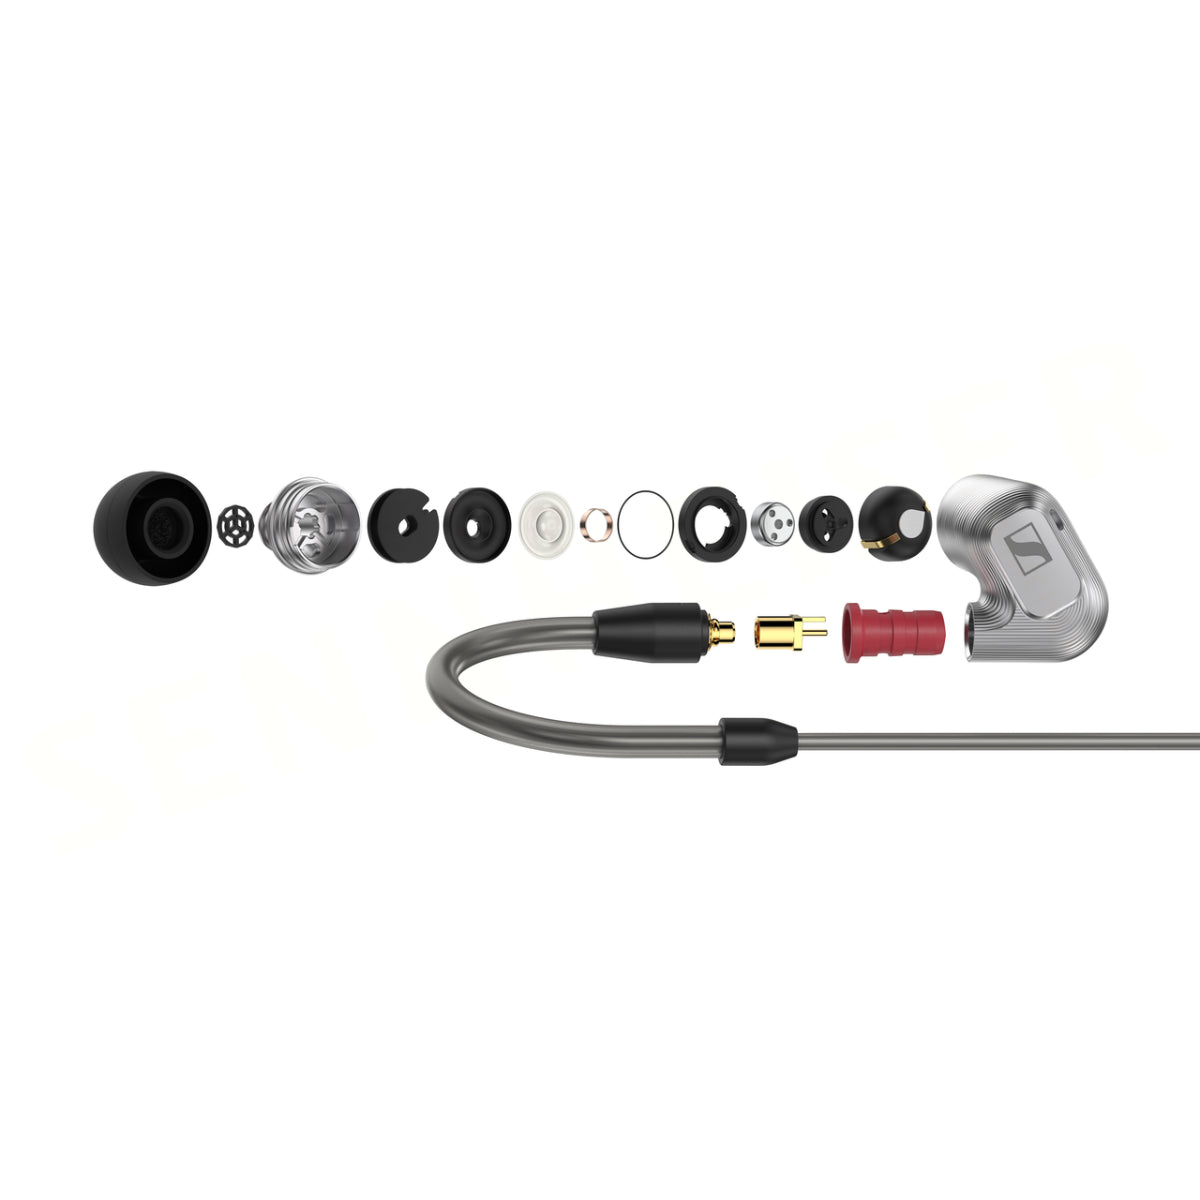 Sennheiser IE 900 In-Ear Audiophile Headphones - Sound Isolating TrueResponse